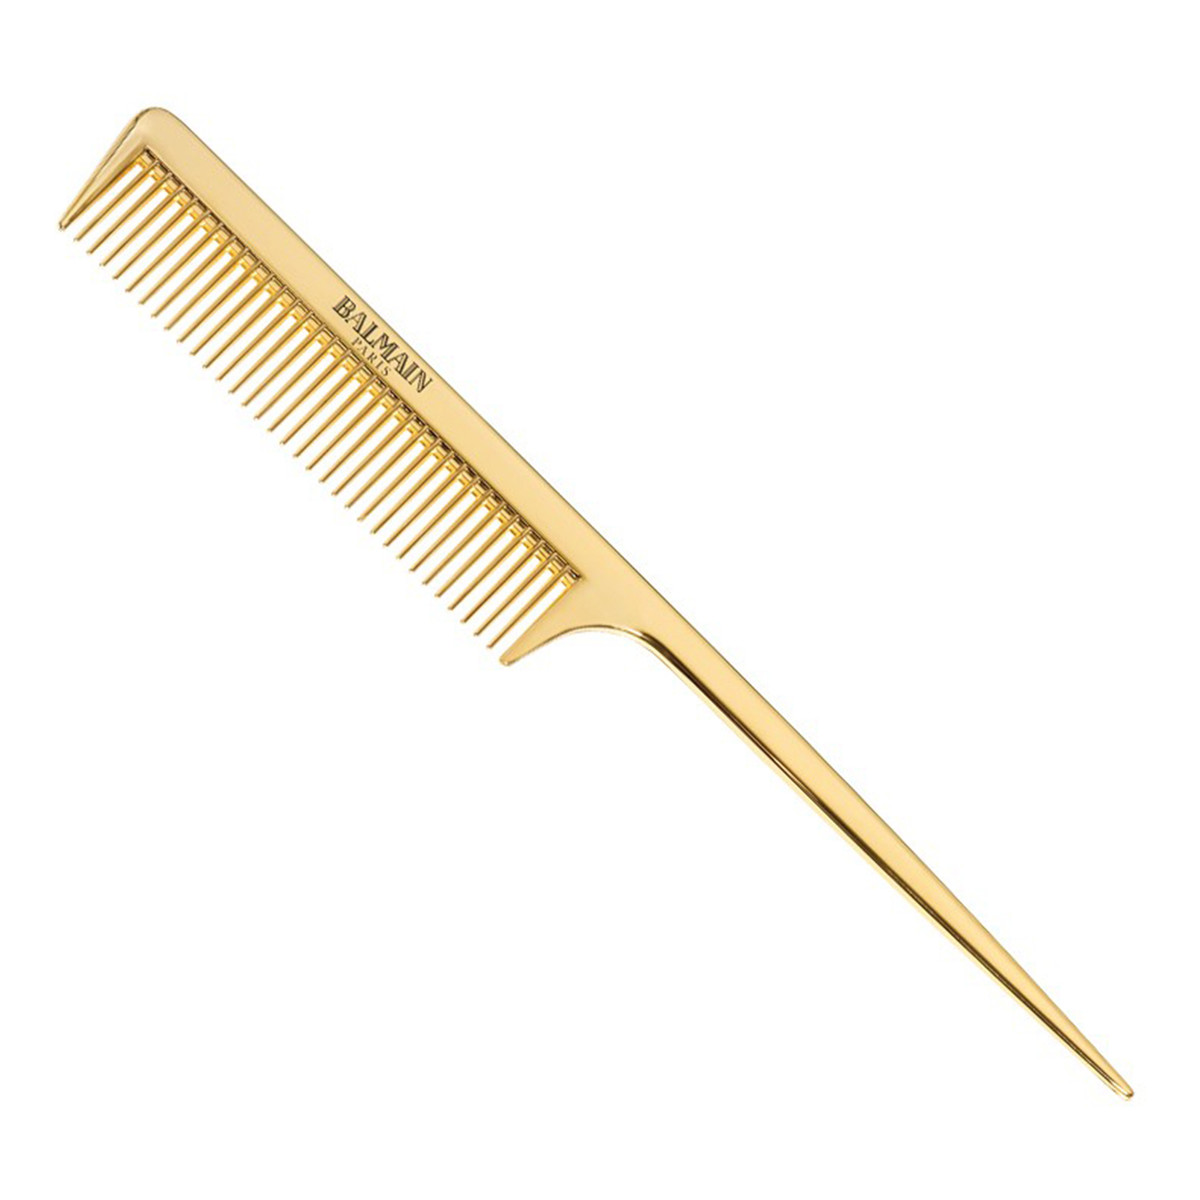 Balmain Golden Tail Comb profesjonalny złoty grzebień do strzyżenia ze szpikulcem